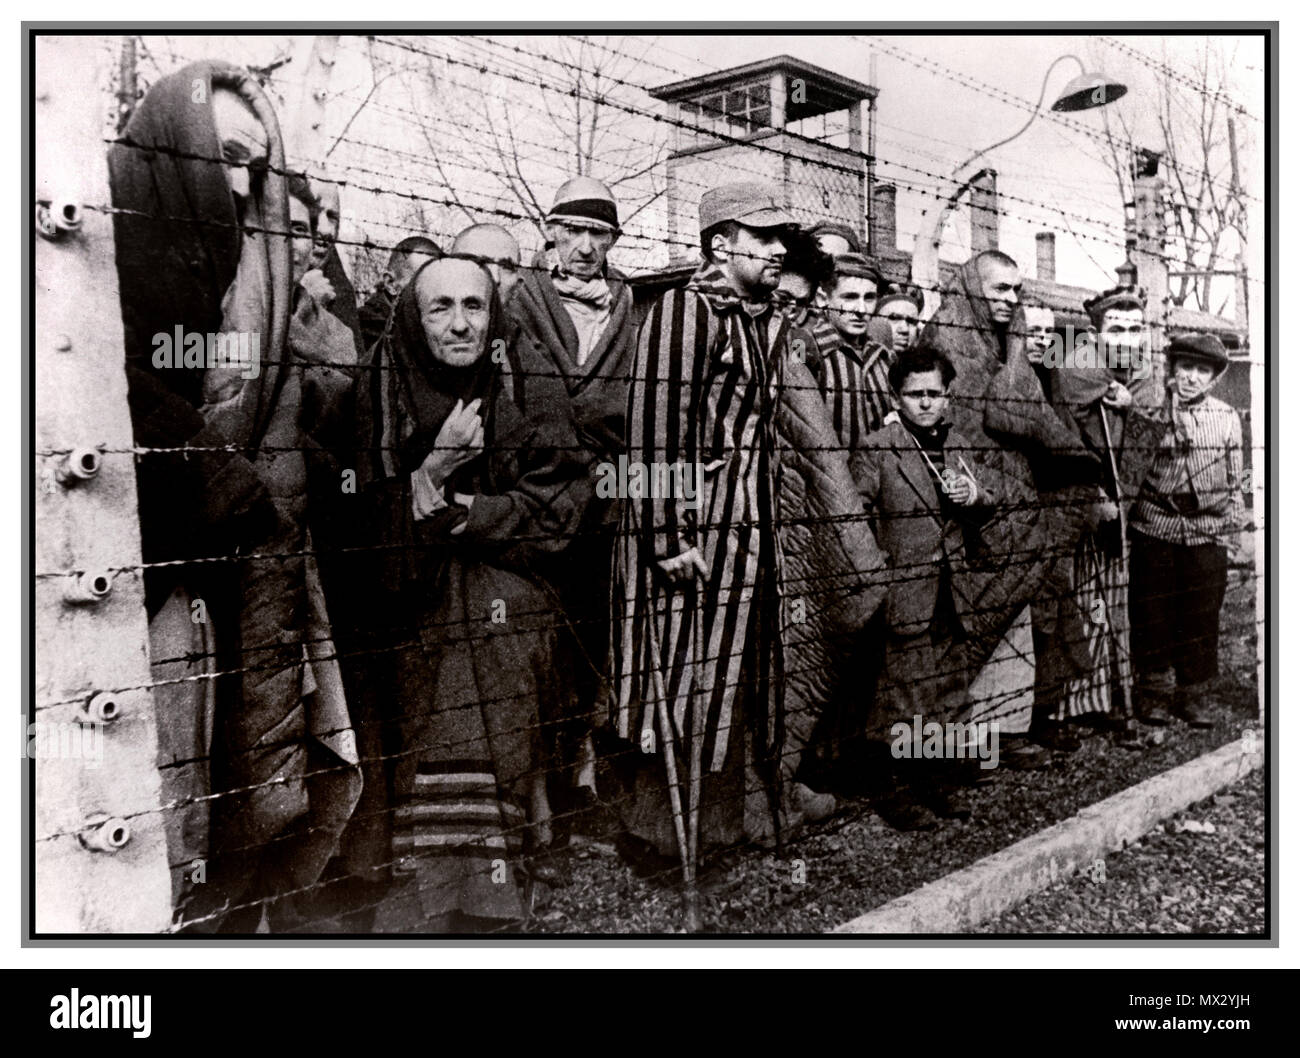 1940's olocausto WW2 Auschwitz-Birkenau Germania nazista del campo di concentramento. Maschio di detenuti dietro elettrificata di filo spinato imprigionato nel congelamento cramped degradanti condizioni disumane. Questa cupa emotionless immagine è stata presa dal loro liberatori nel 1945. Più di 1.1 milioni di persone sono morte di Auschwitz, compresi quasi un milione di ebrei. Coloro che non sono stati inviati direttamente alle camere a gas sono stati condannati a un duro lavoro forzato. Il campo di Auschwitz era complesso essenziale per eseguire il piano nazista per la "Soluzione Finale". Auschwitz ha lasciato il segno come uno dei più famigerati Campi della morte della II Guerra Mondiale Foto Stock